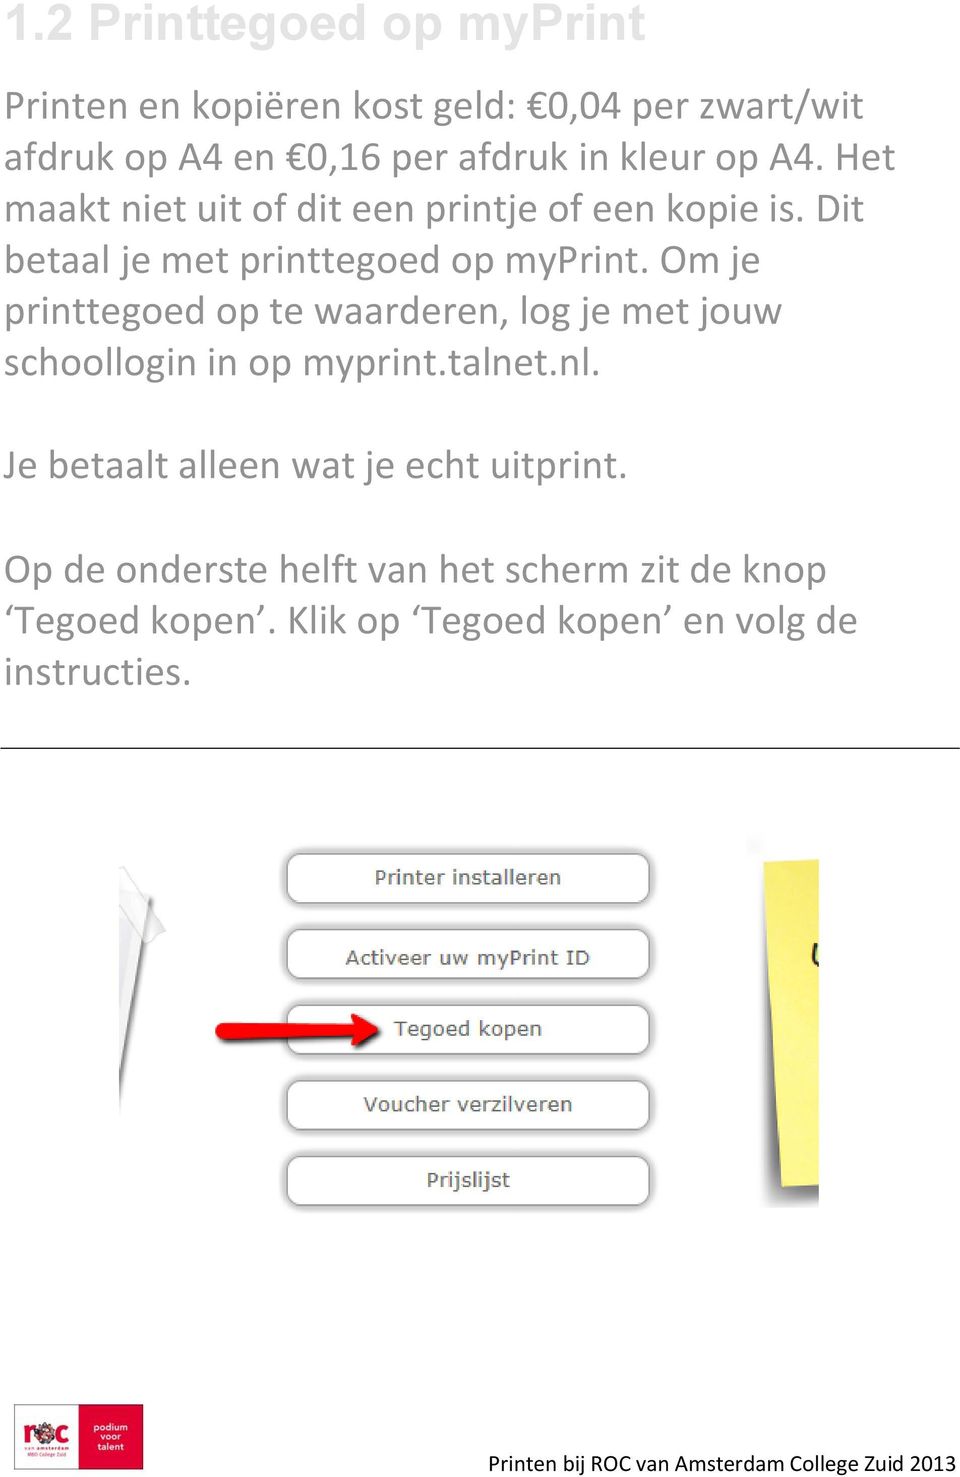 Om je printtegoed op te waarderen, log je met jouw schoollogin in op myprint.talnet.nl.